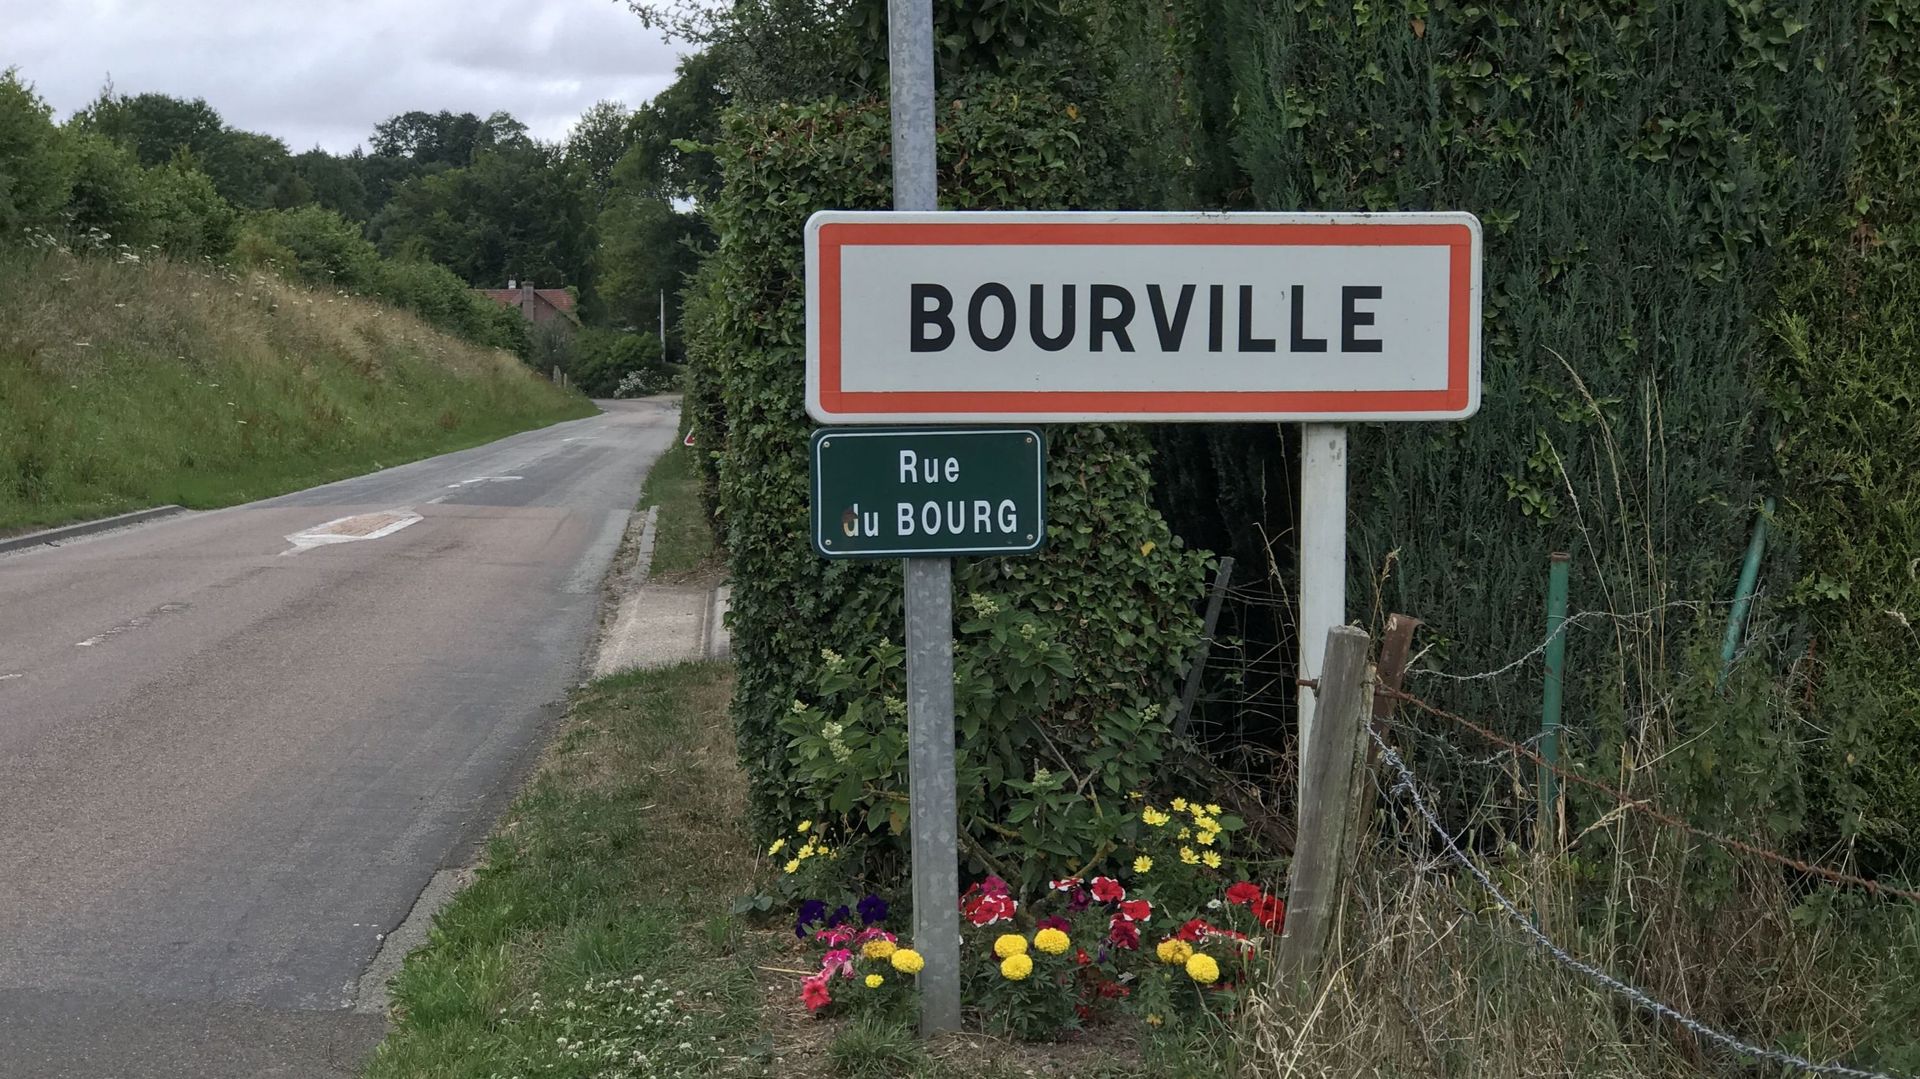 Le village de Bourville où André Raimbourg a grandi l'a inspiré pour choisir son nom de scène